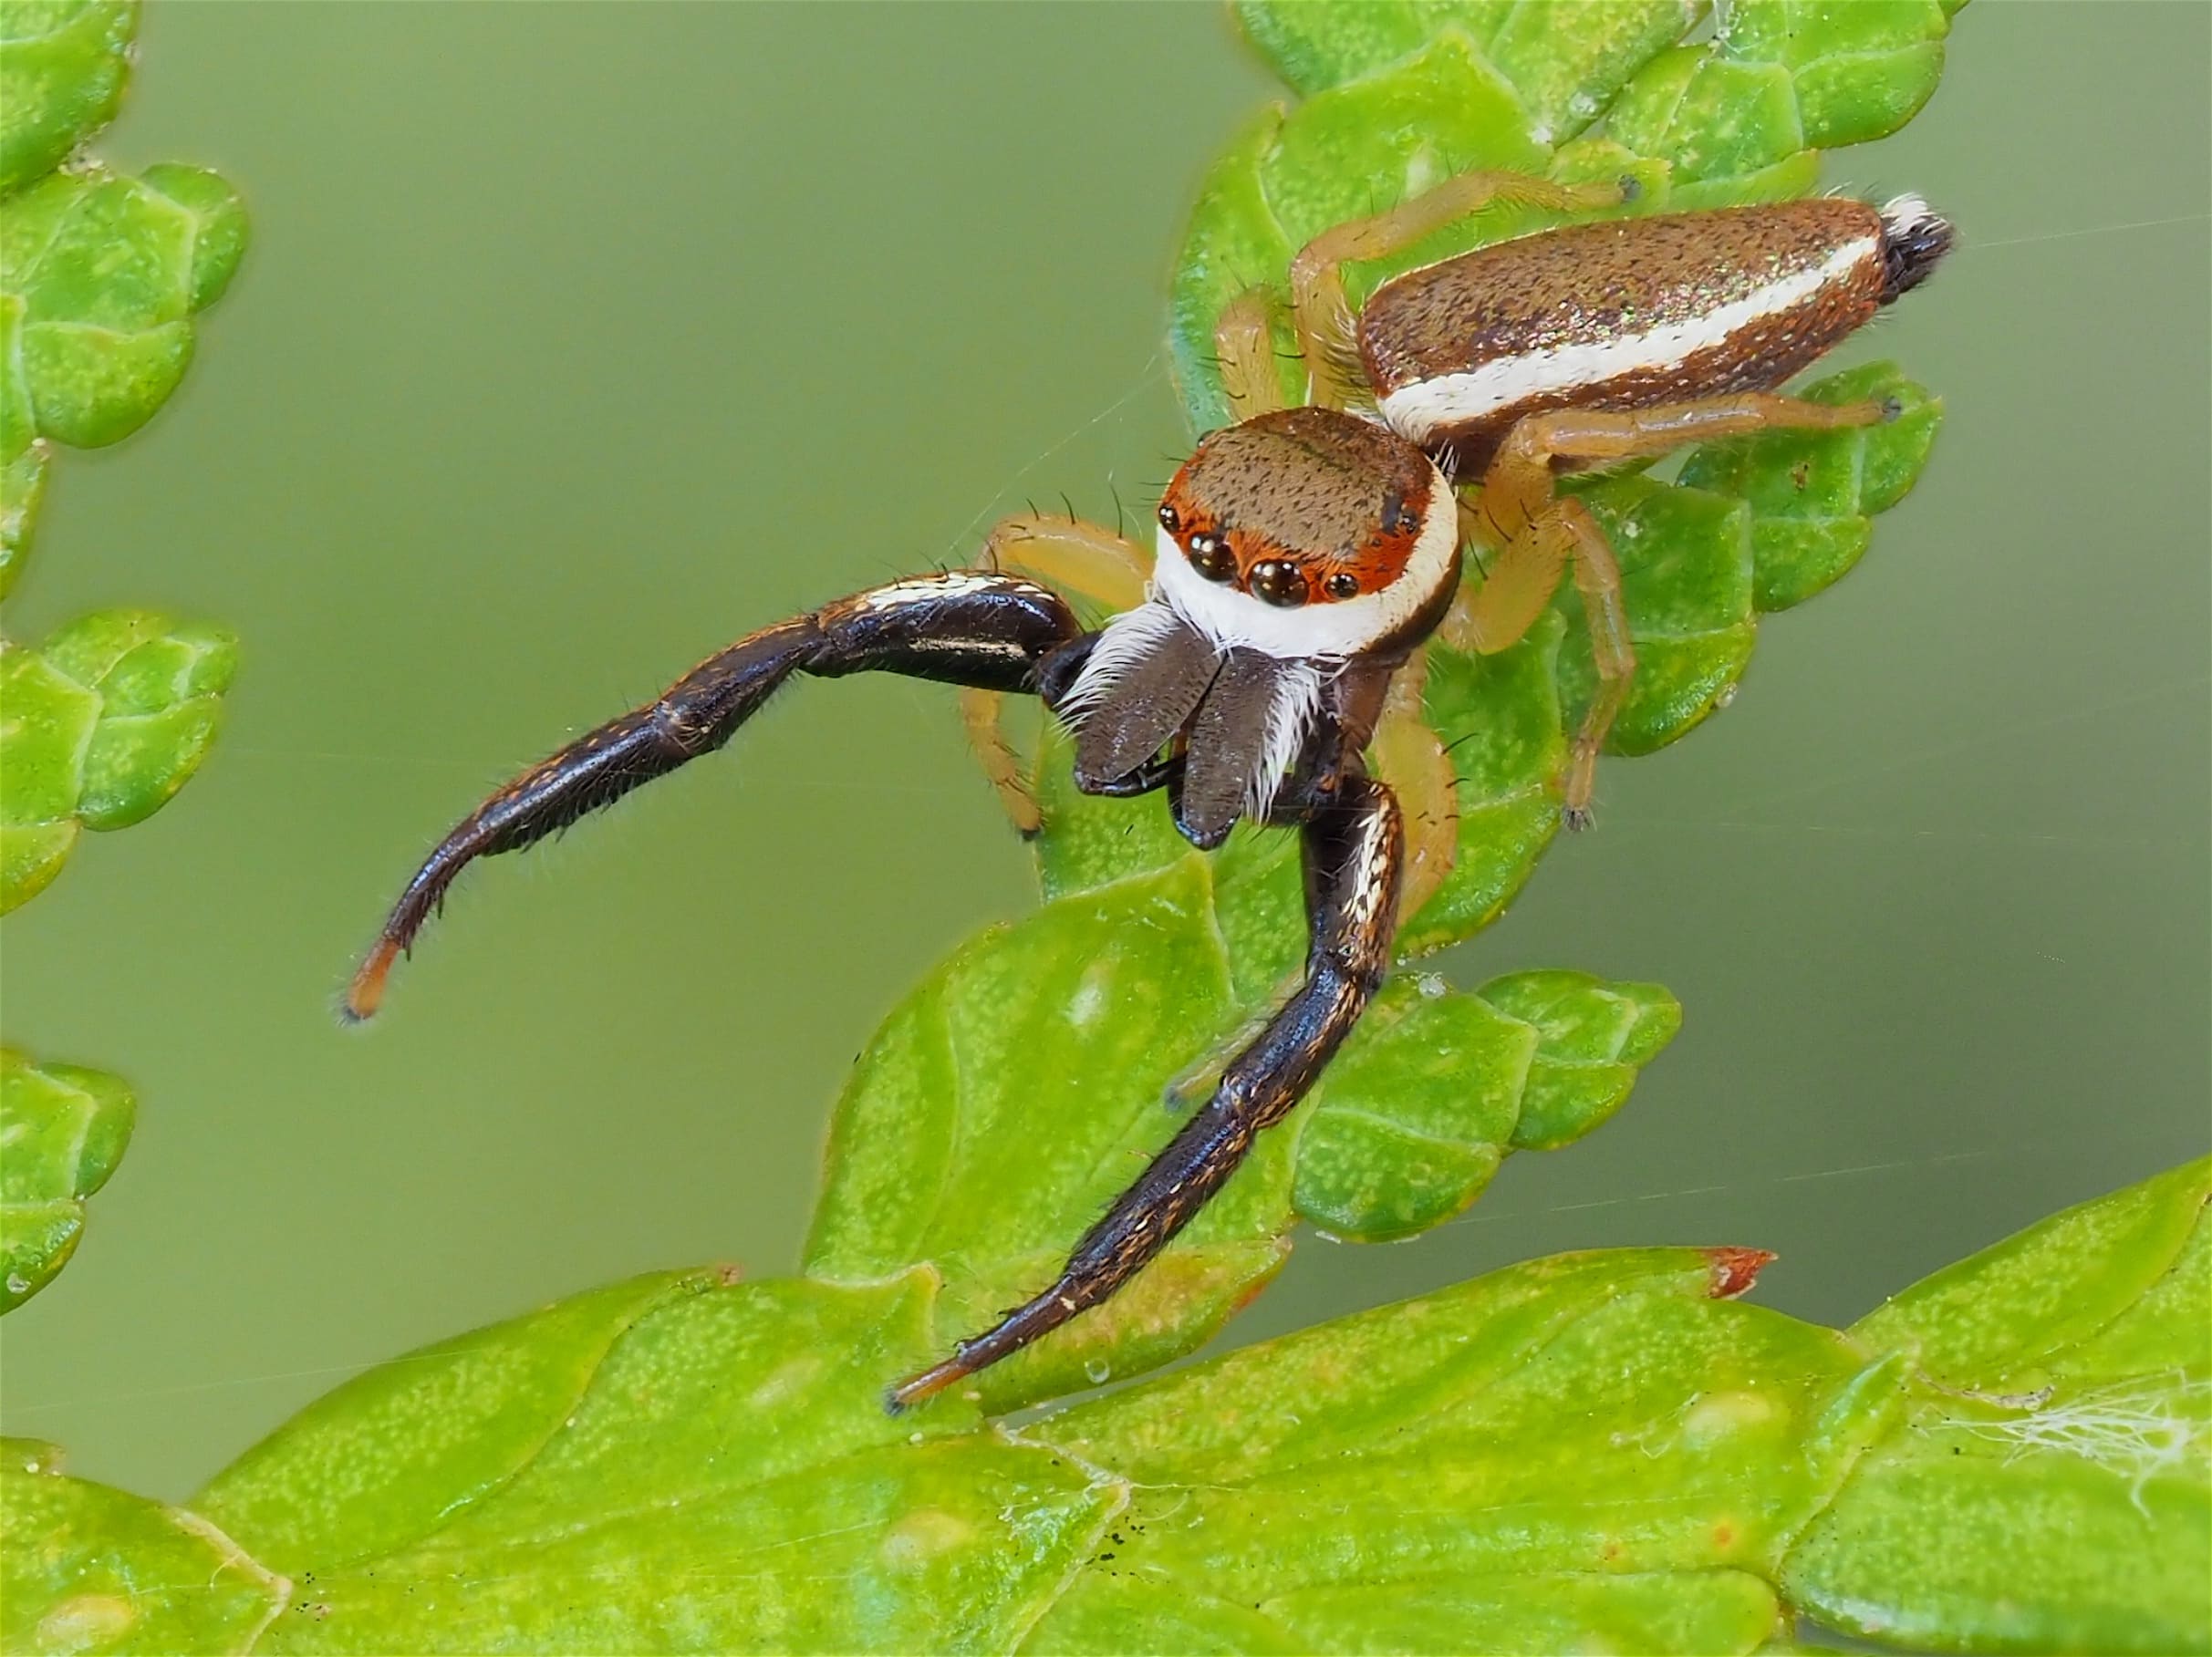 Picture of Hentzia palmarum (Hentz Jumping Spider) - Male - Dorsal,Eyes